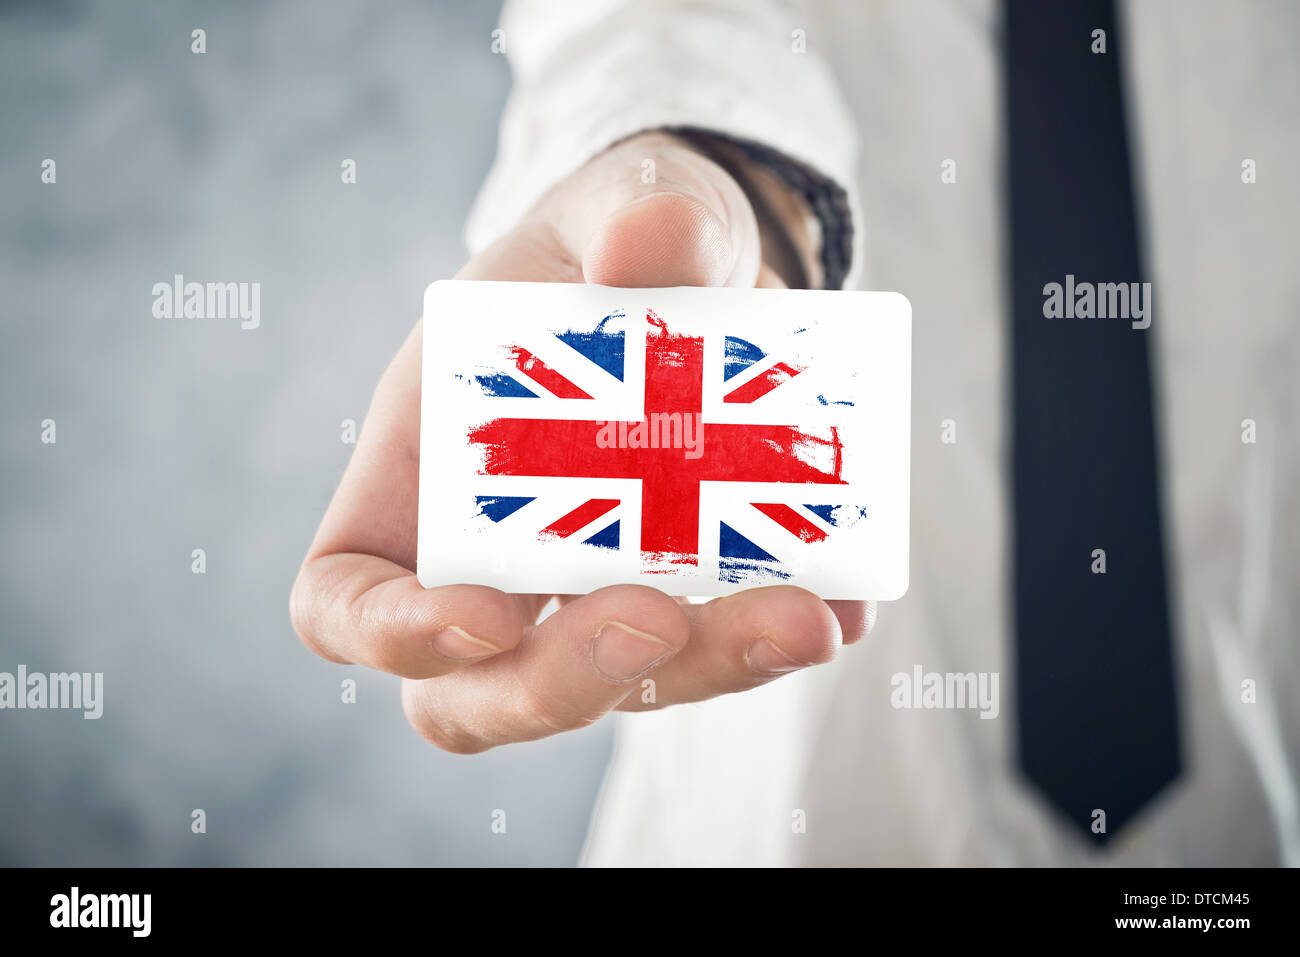 Businessman holding britannique carte d'affaires avec la Grande-Bretagne Drapeau. La coopération internationale, les investissements, l'occasion d'affaires Banque D'Images